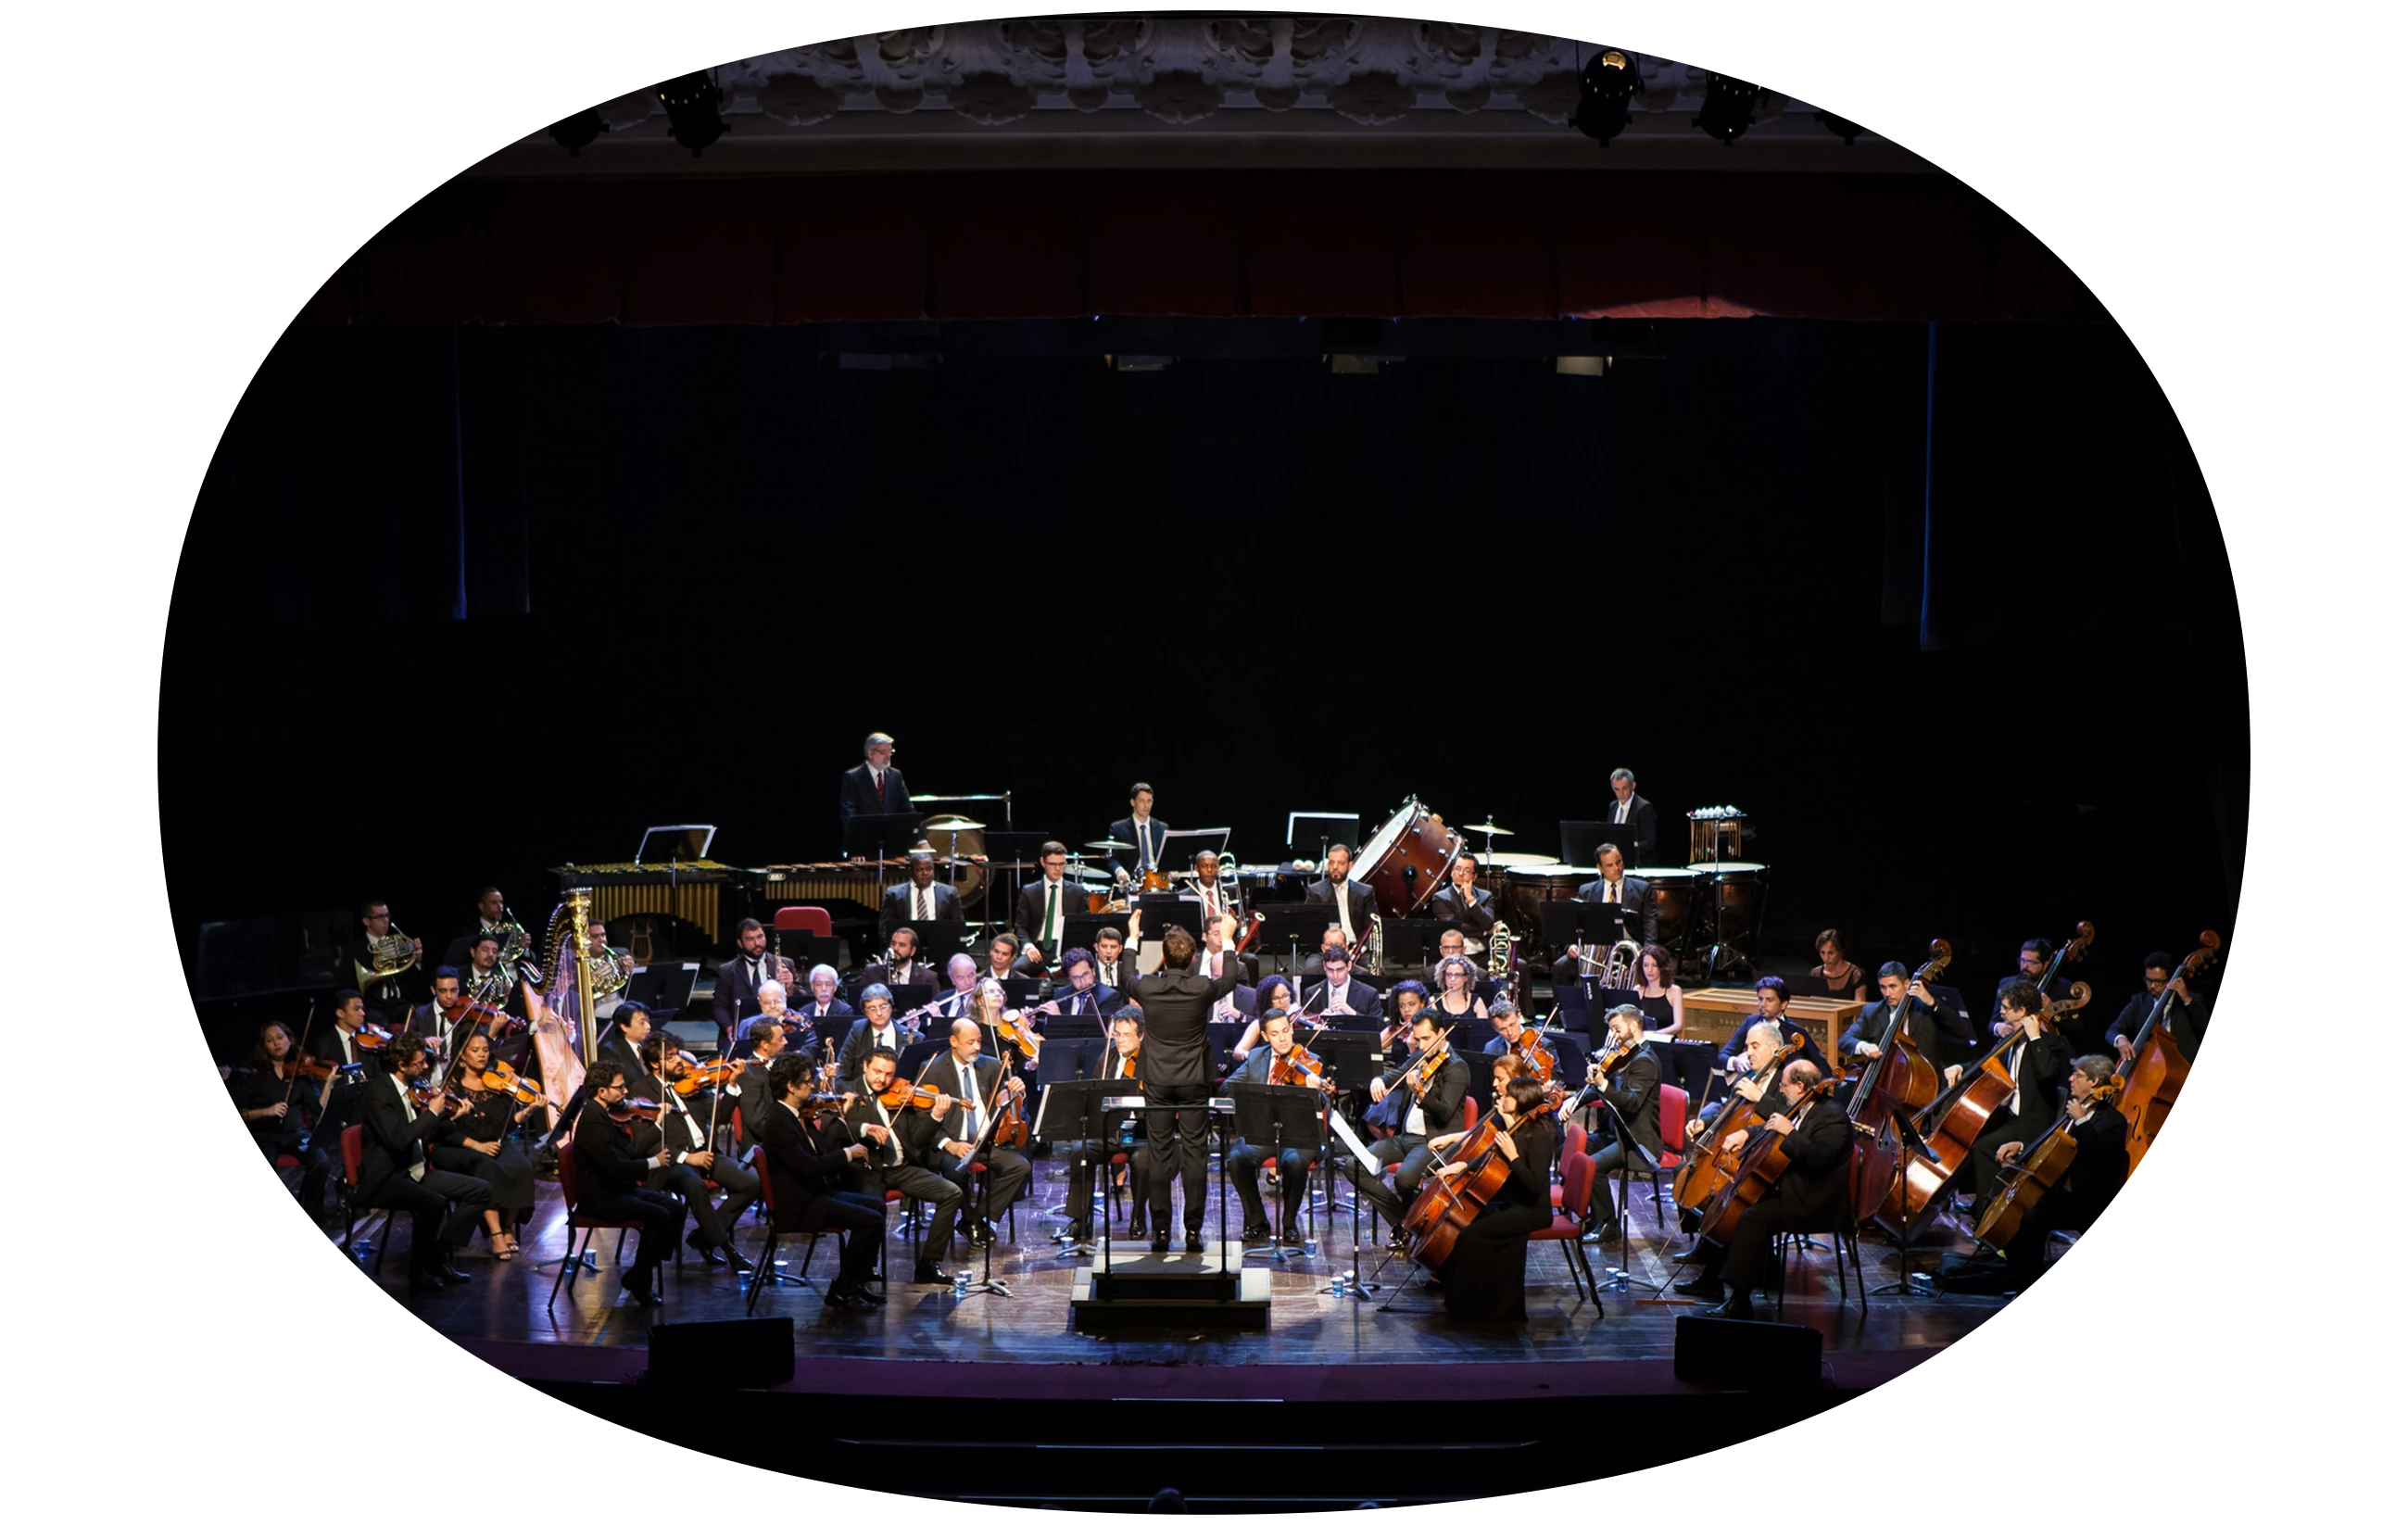 Imagem de uma orquestra tocando para uma plateia